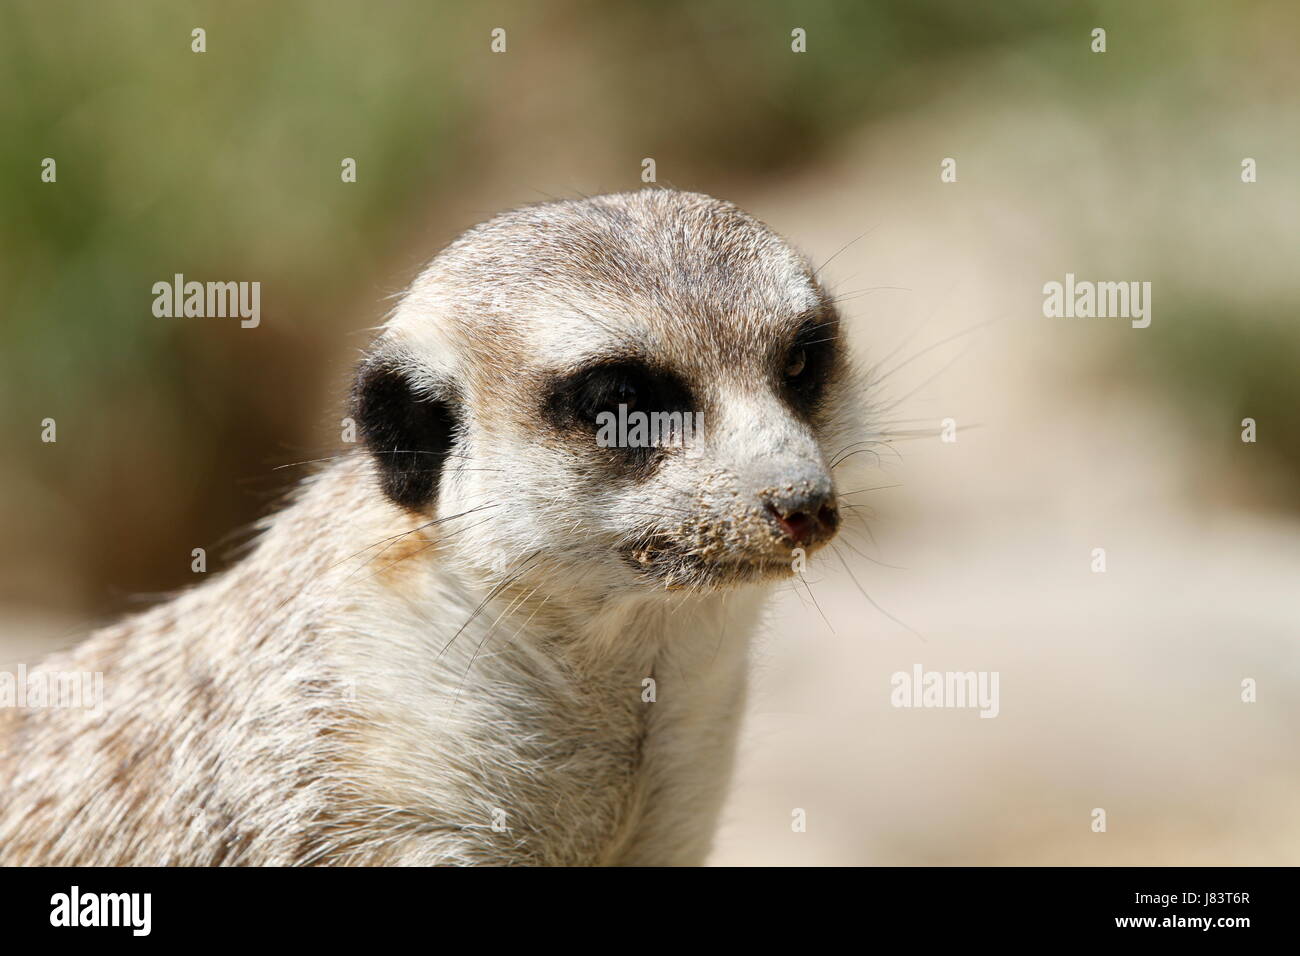 meerkats in closeup Stock Photo